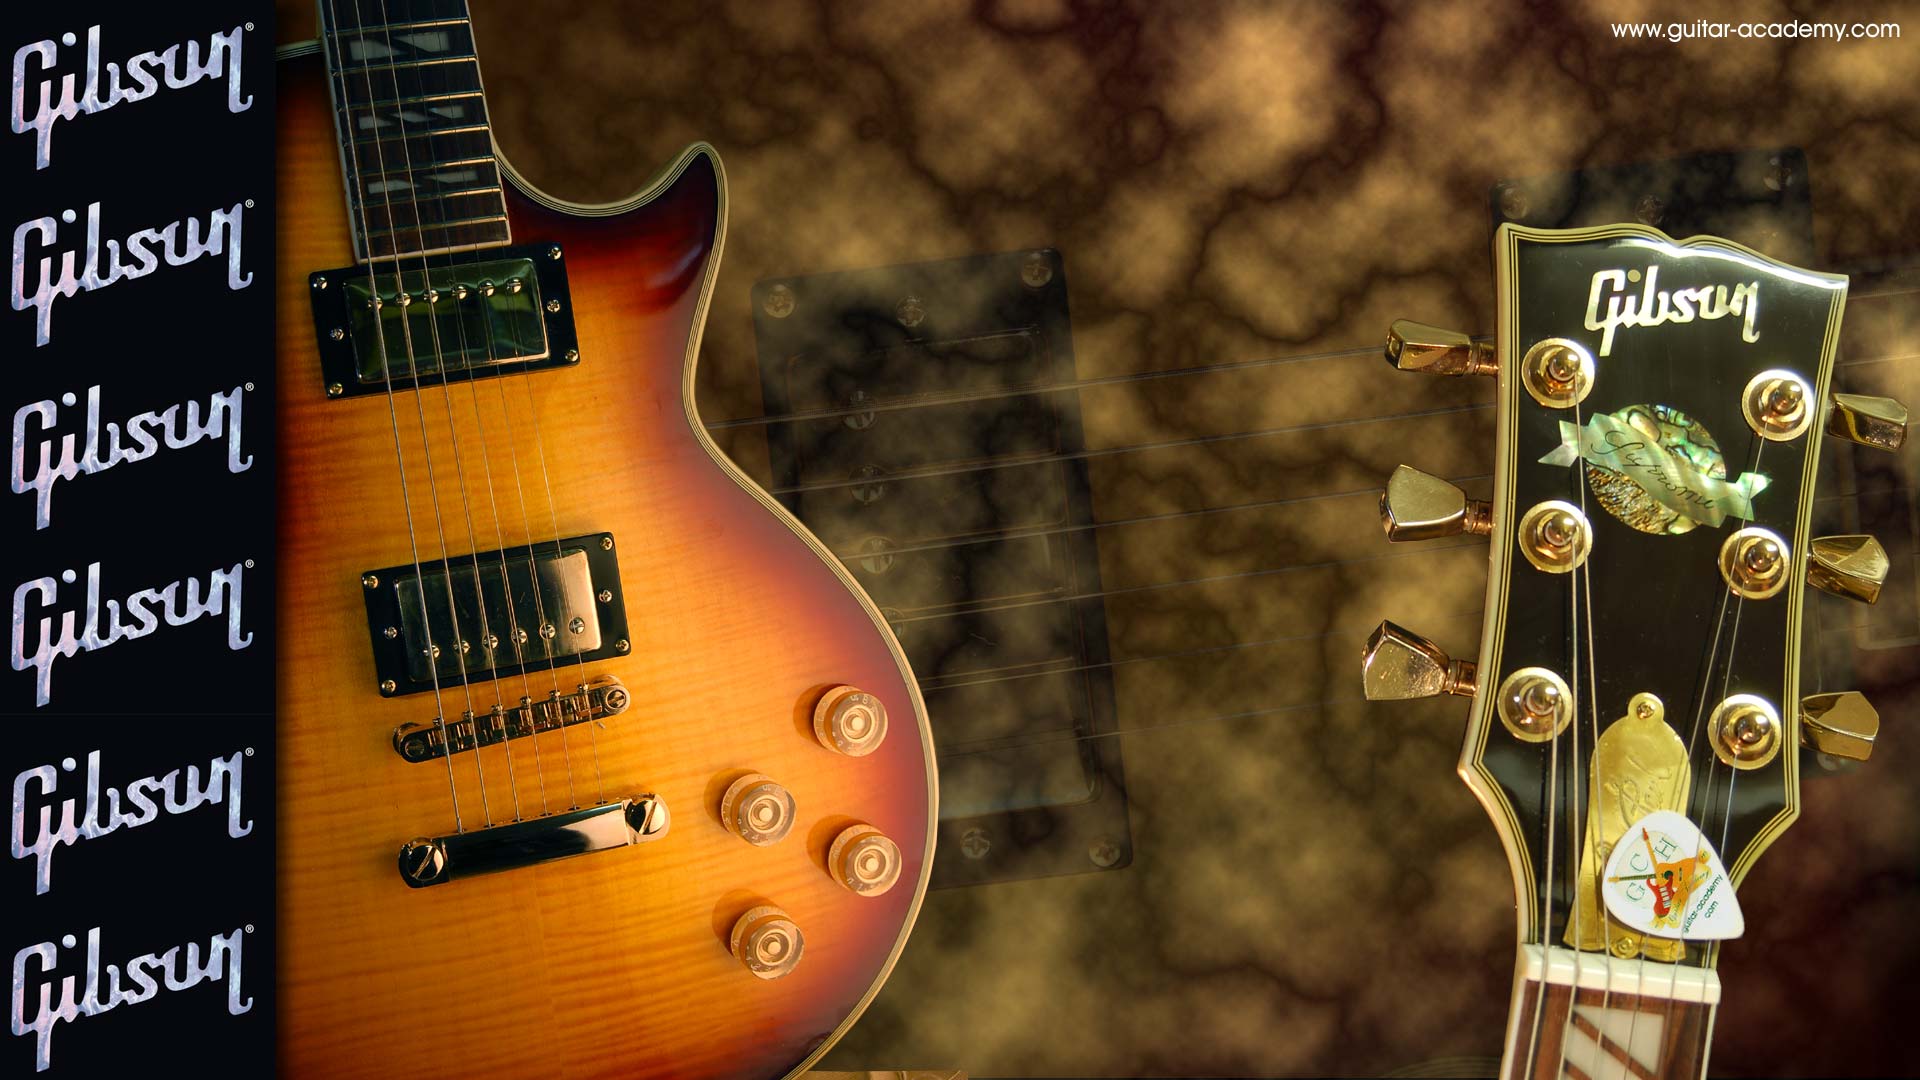 Guitar Image HD Wallpaper